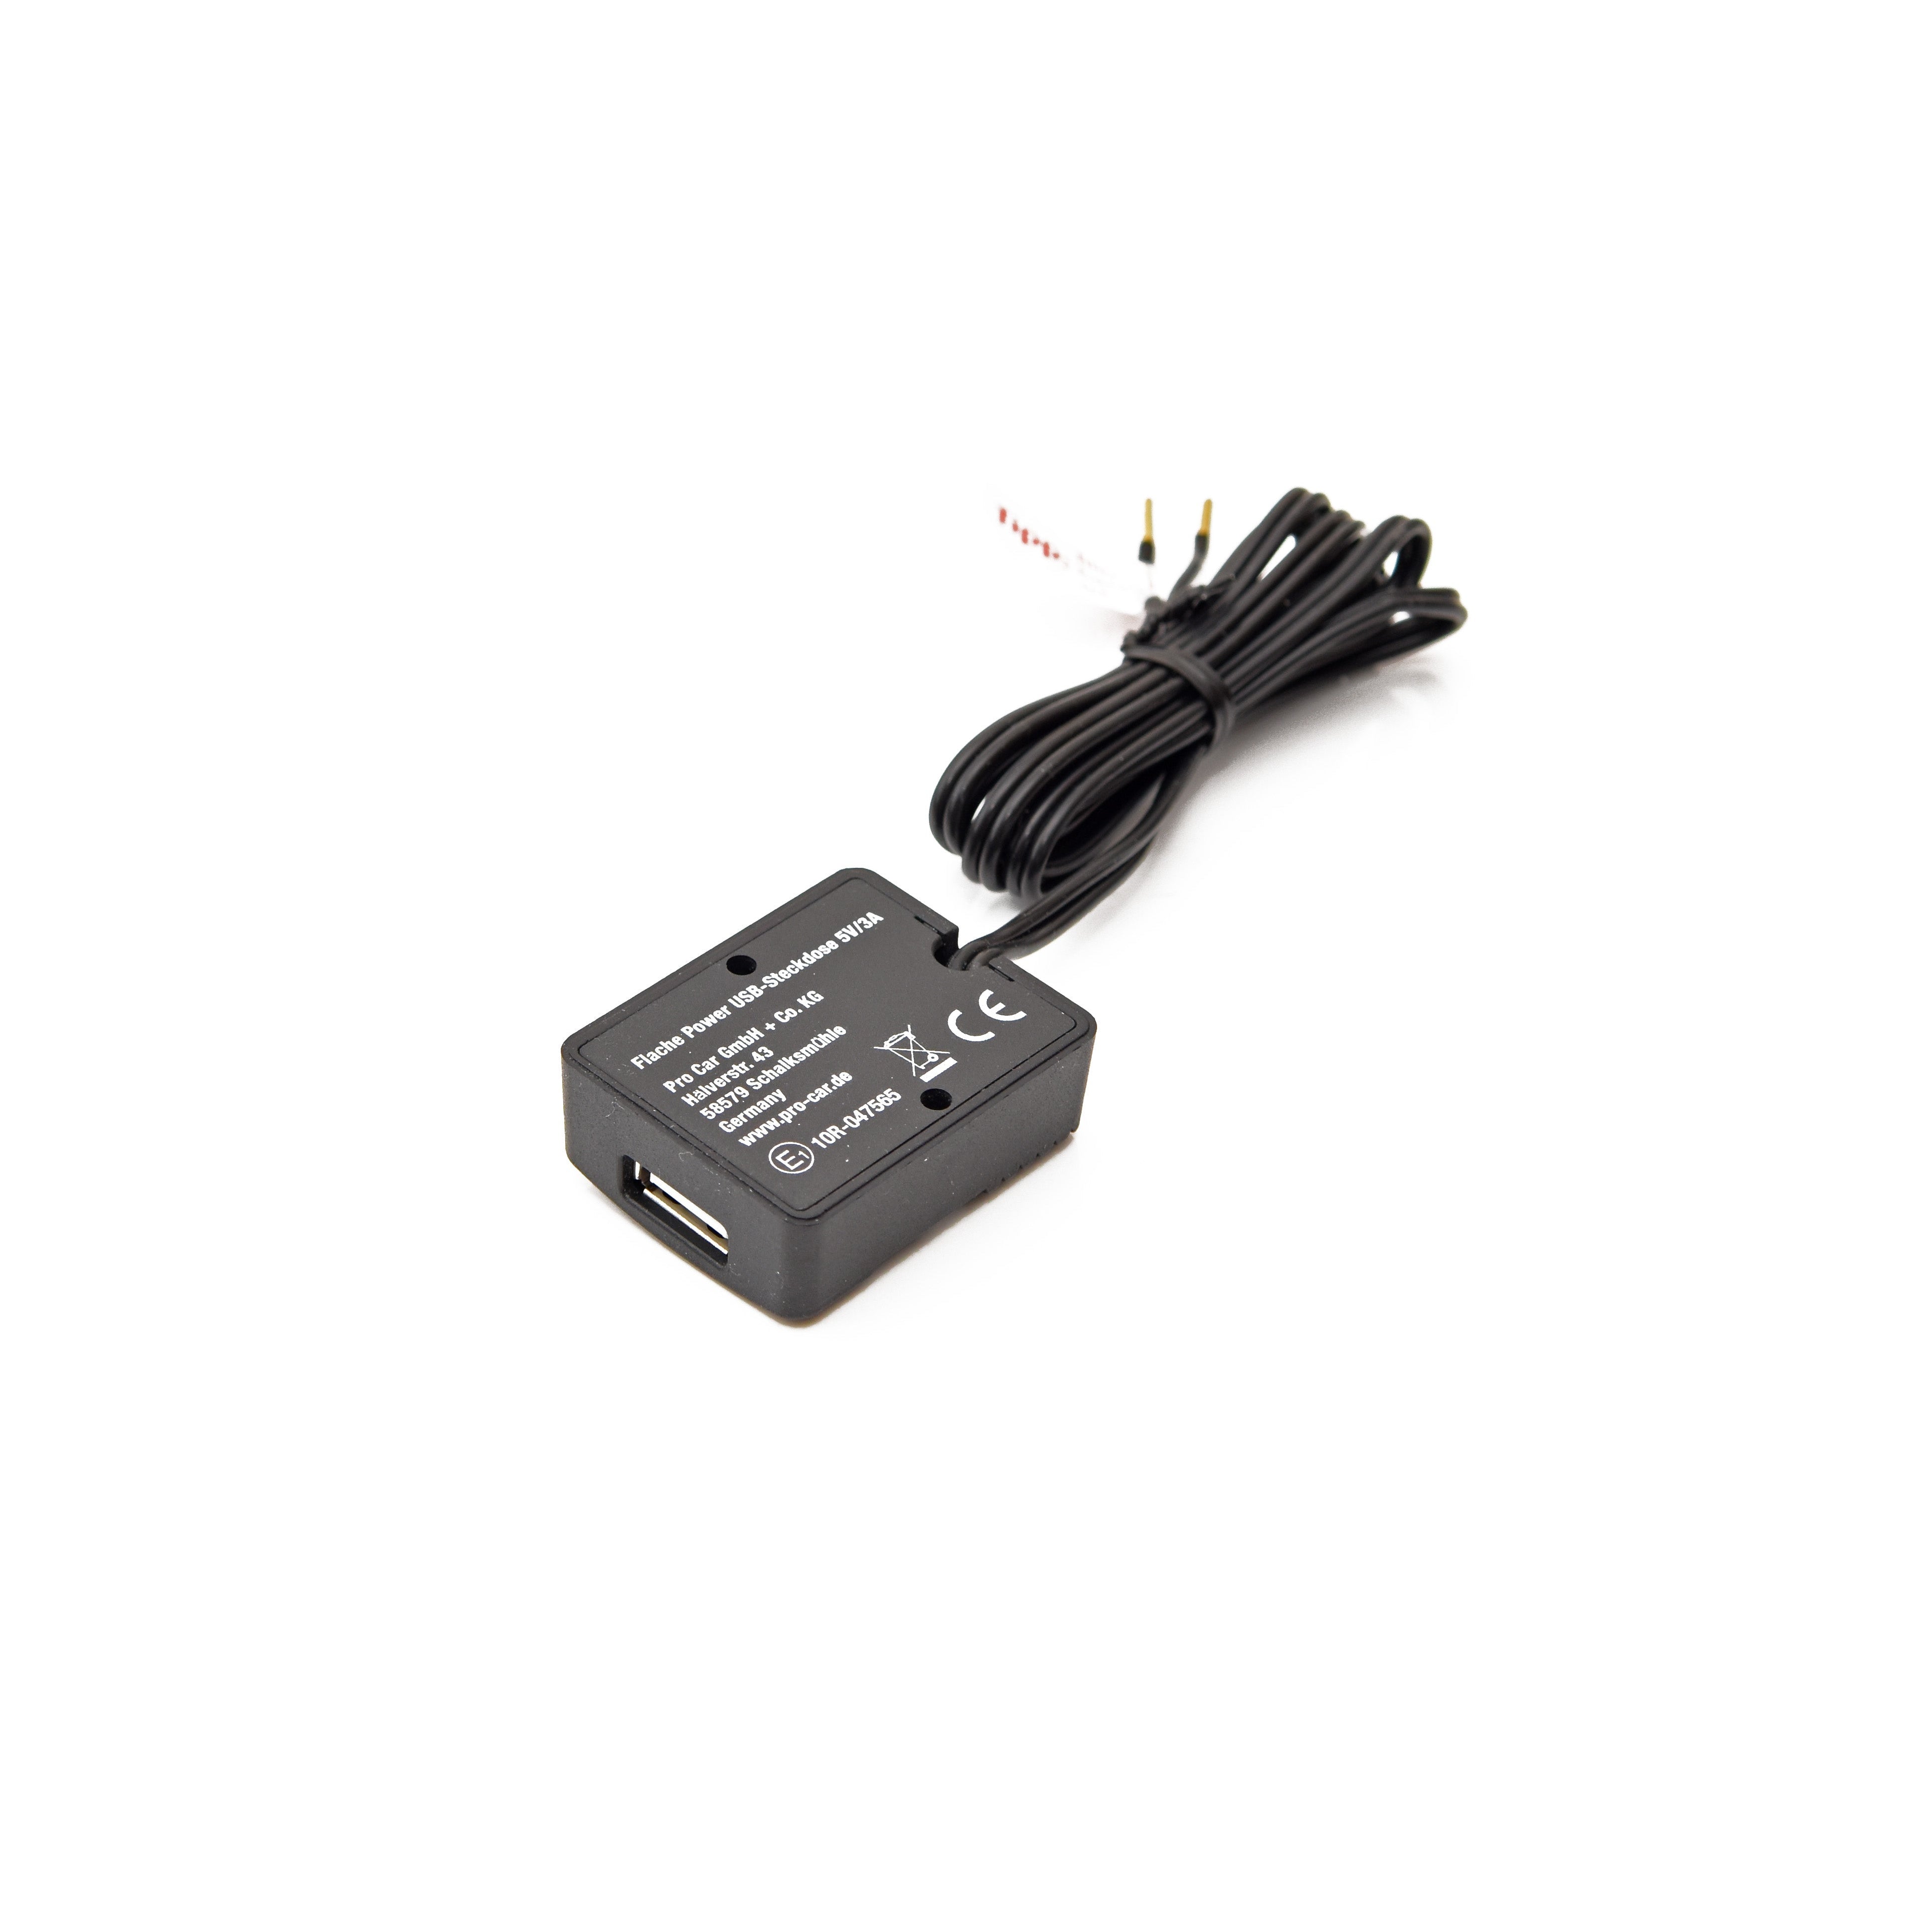 Flache Power-USB-Steckdose mit 3A Ladestrom, klein und kompakt Unterseite